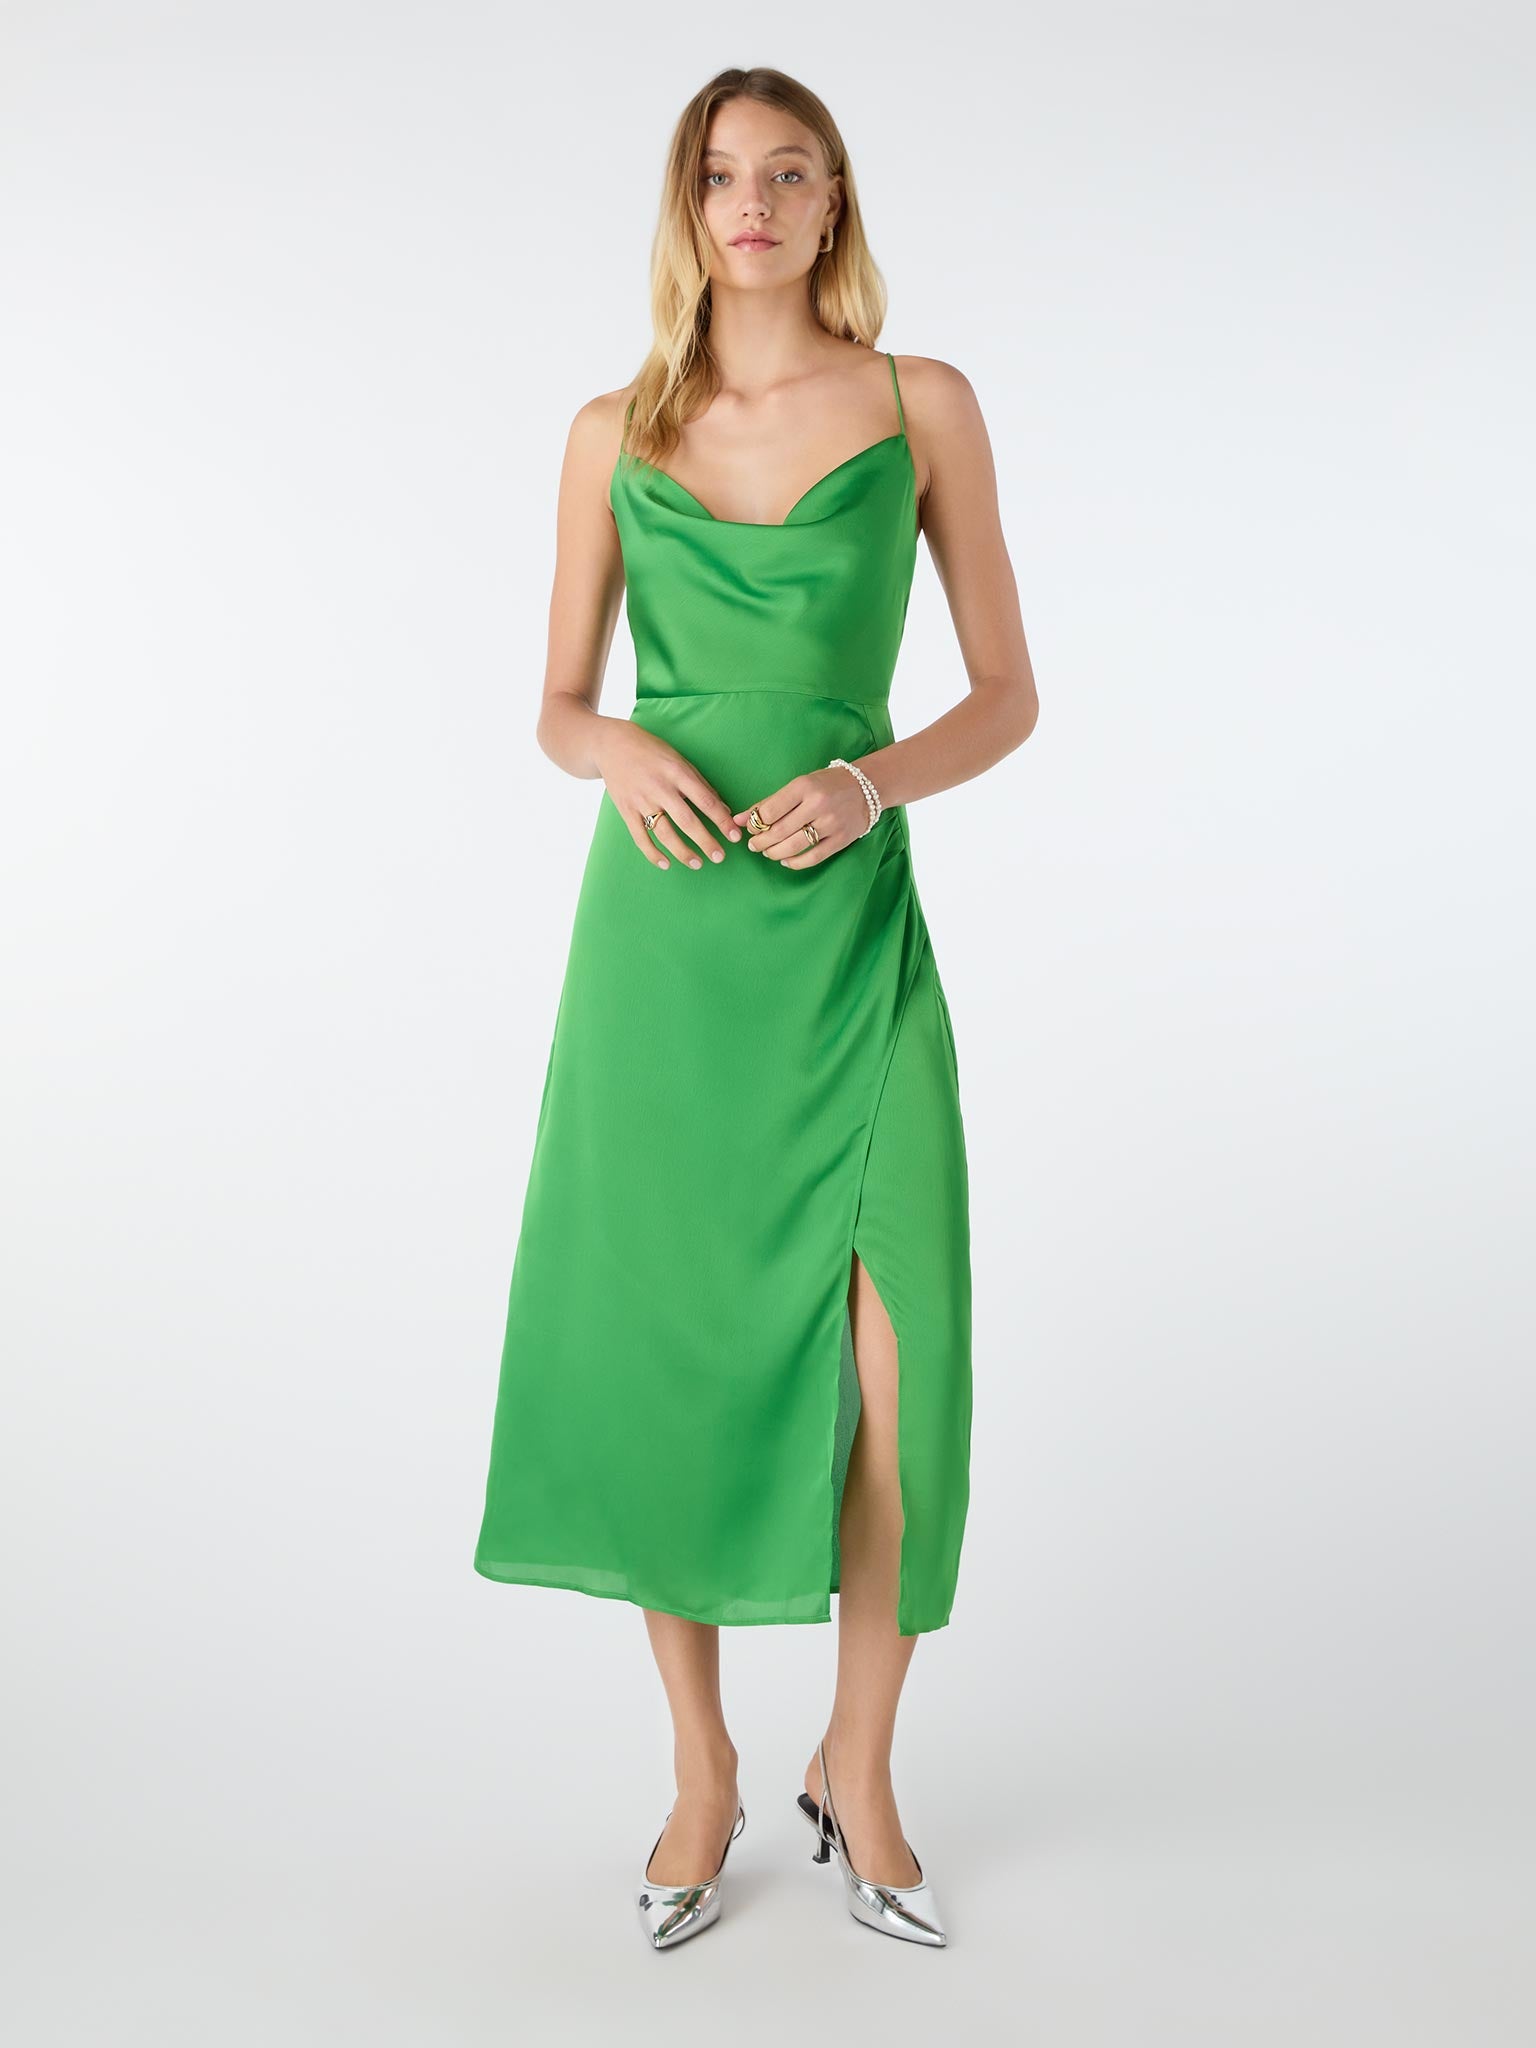 Aspen Dress in Green